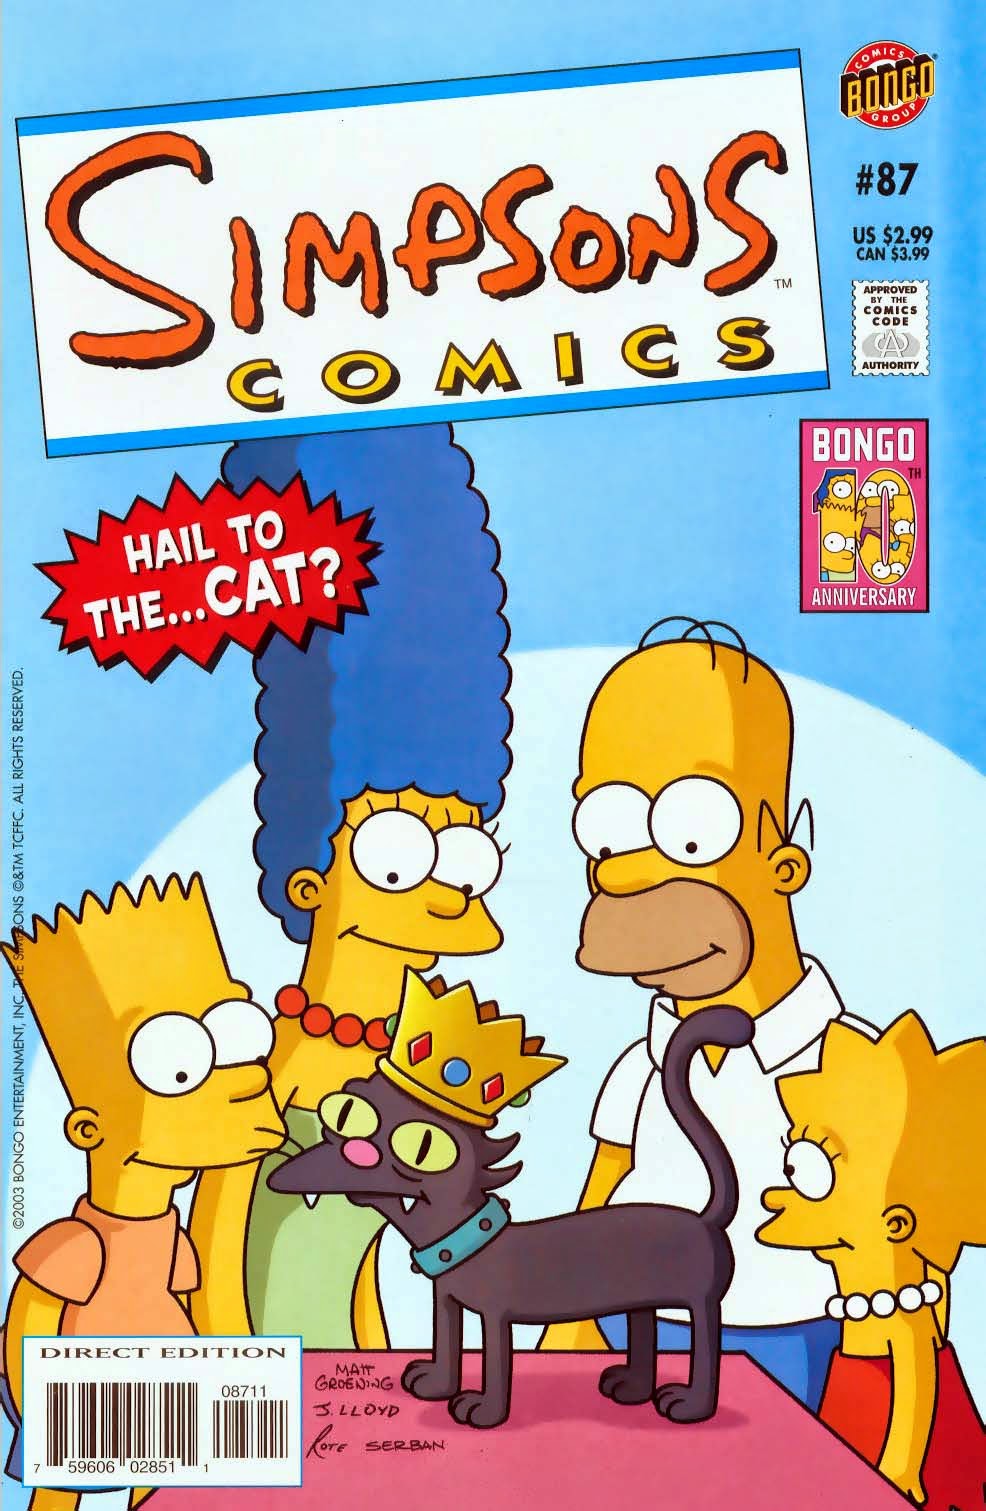 Tebeos de los Simpsons: La portada de Simpsons Comics 87 viajó en el tiempo